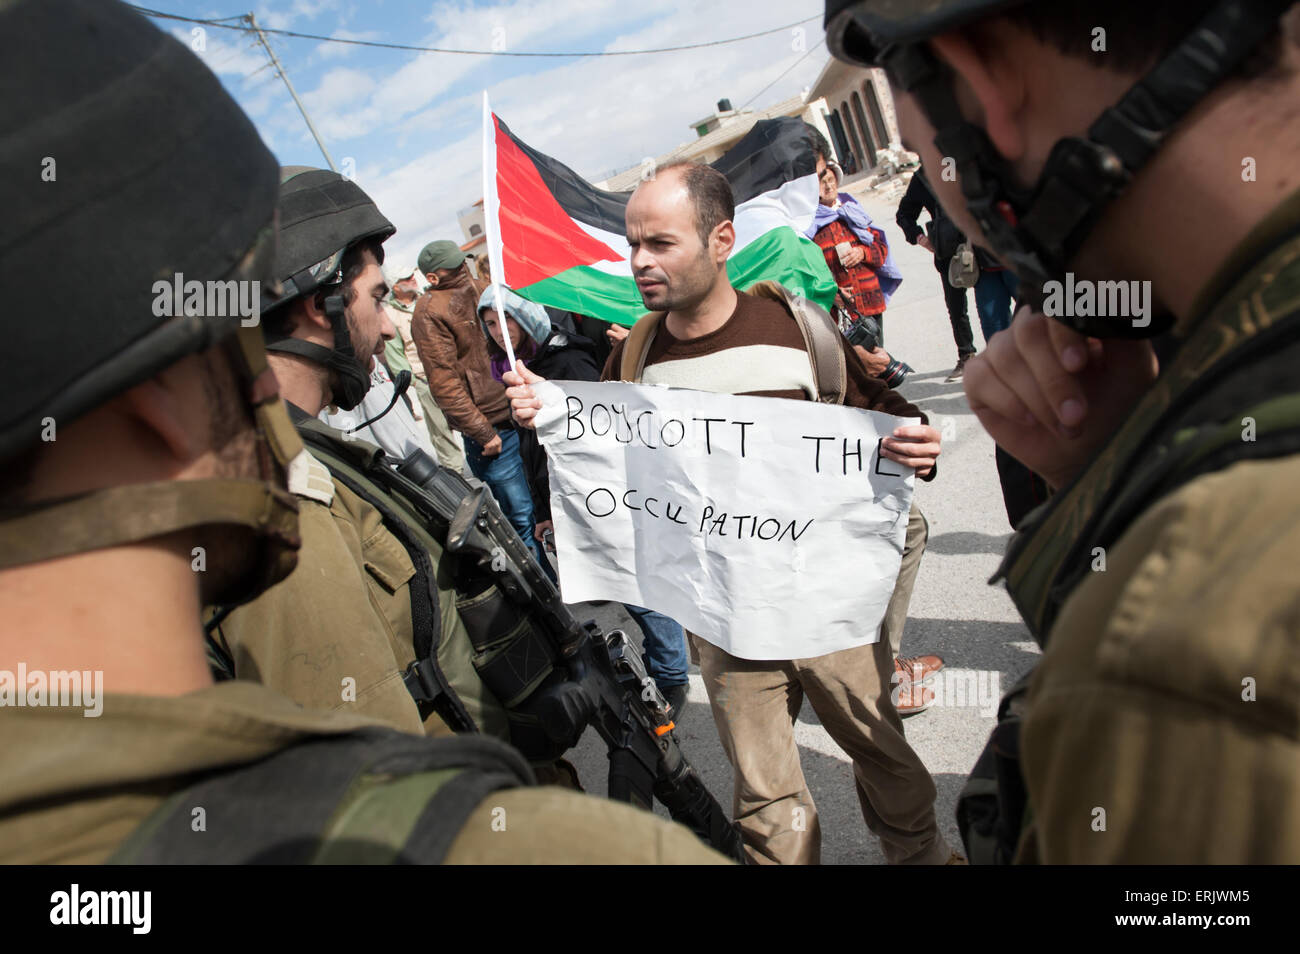 Un attivista palestinese con un segno di lettura, "boicottare l'occupazione, volti soldati israeliani durante una manifestazione di protesta nella West Bank. Foto Stock